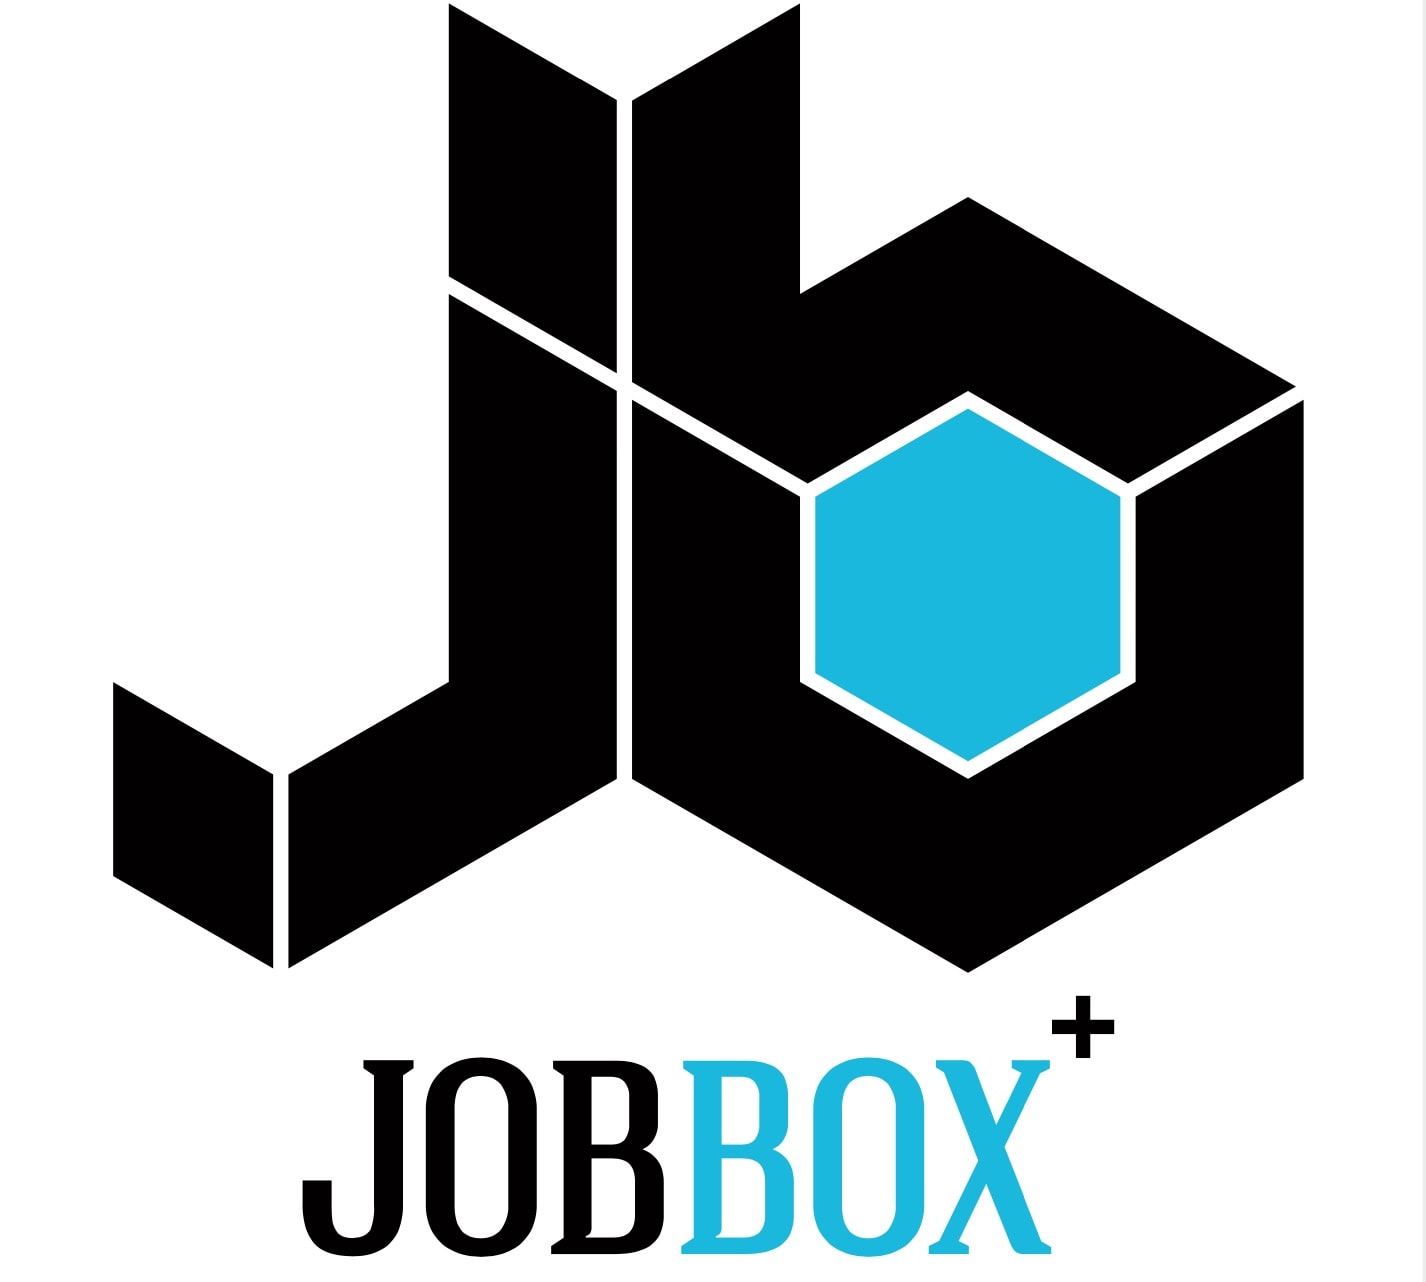 Jobbox – Ein Projekt mit Zukunft